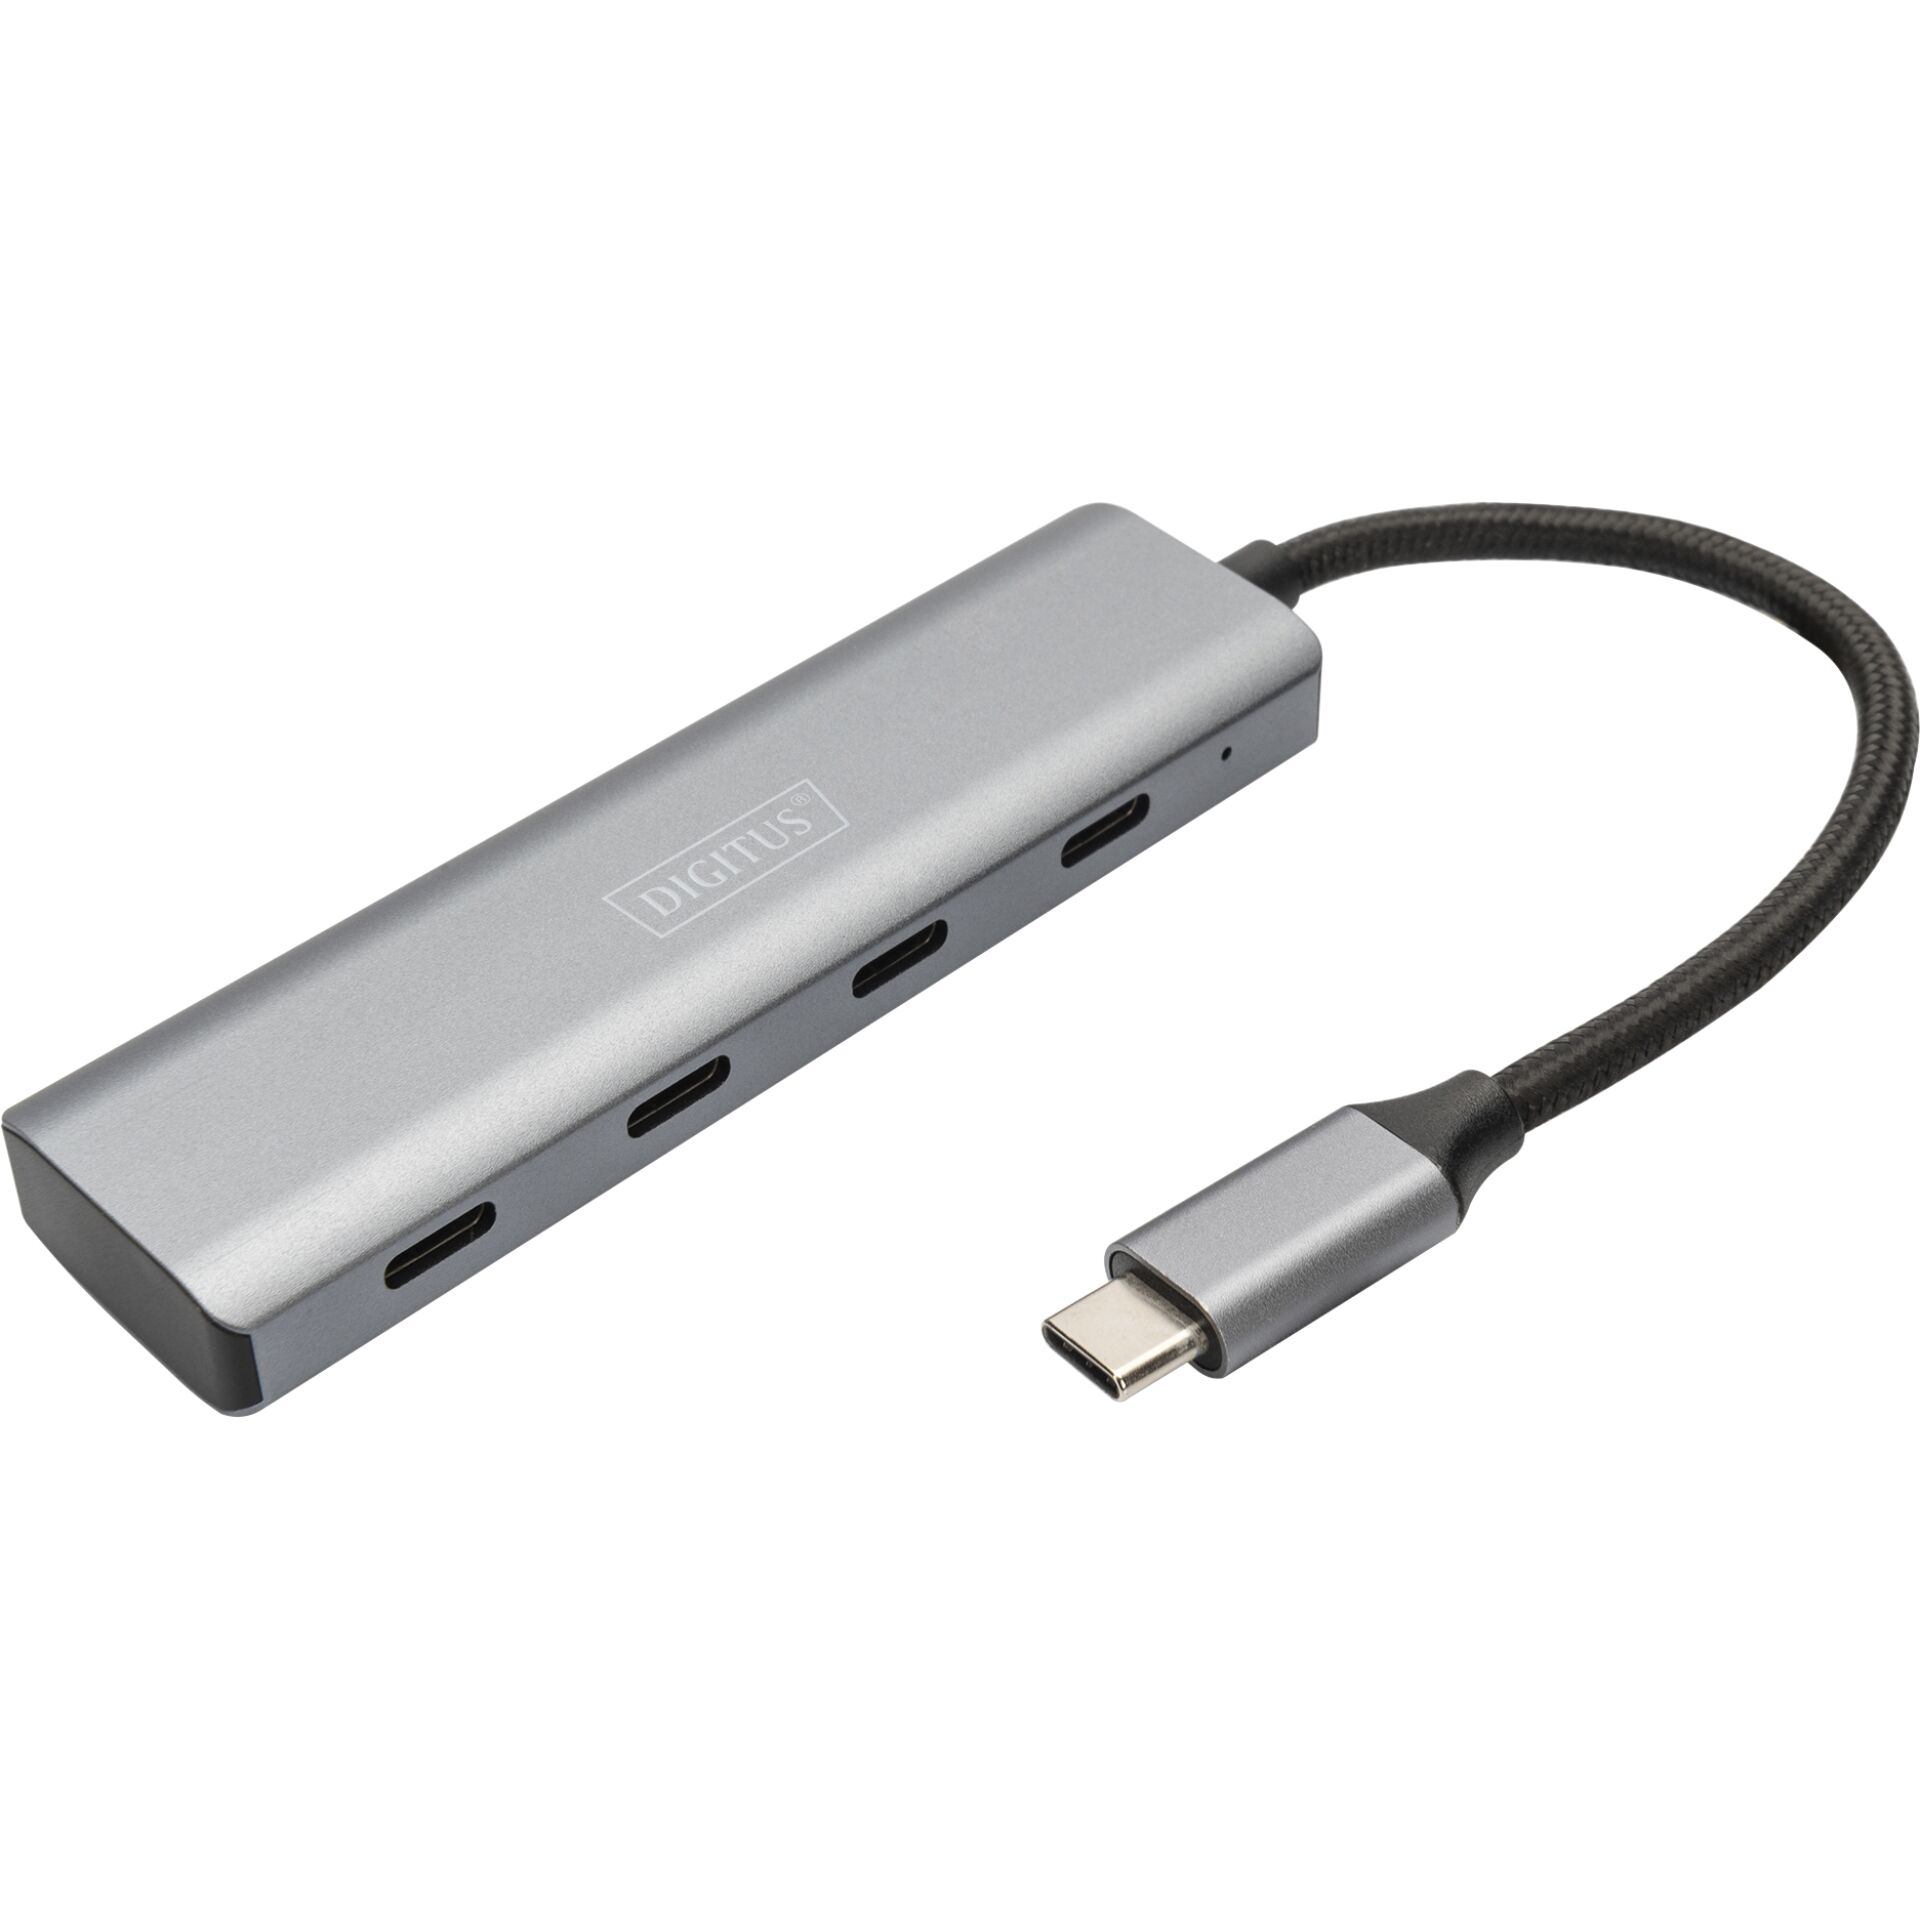 DIGITUS USB-C 4 Port HUB Alumin. Housing 4xUSB-C 3.1 Gen1,5G